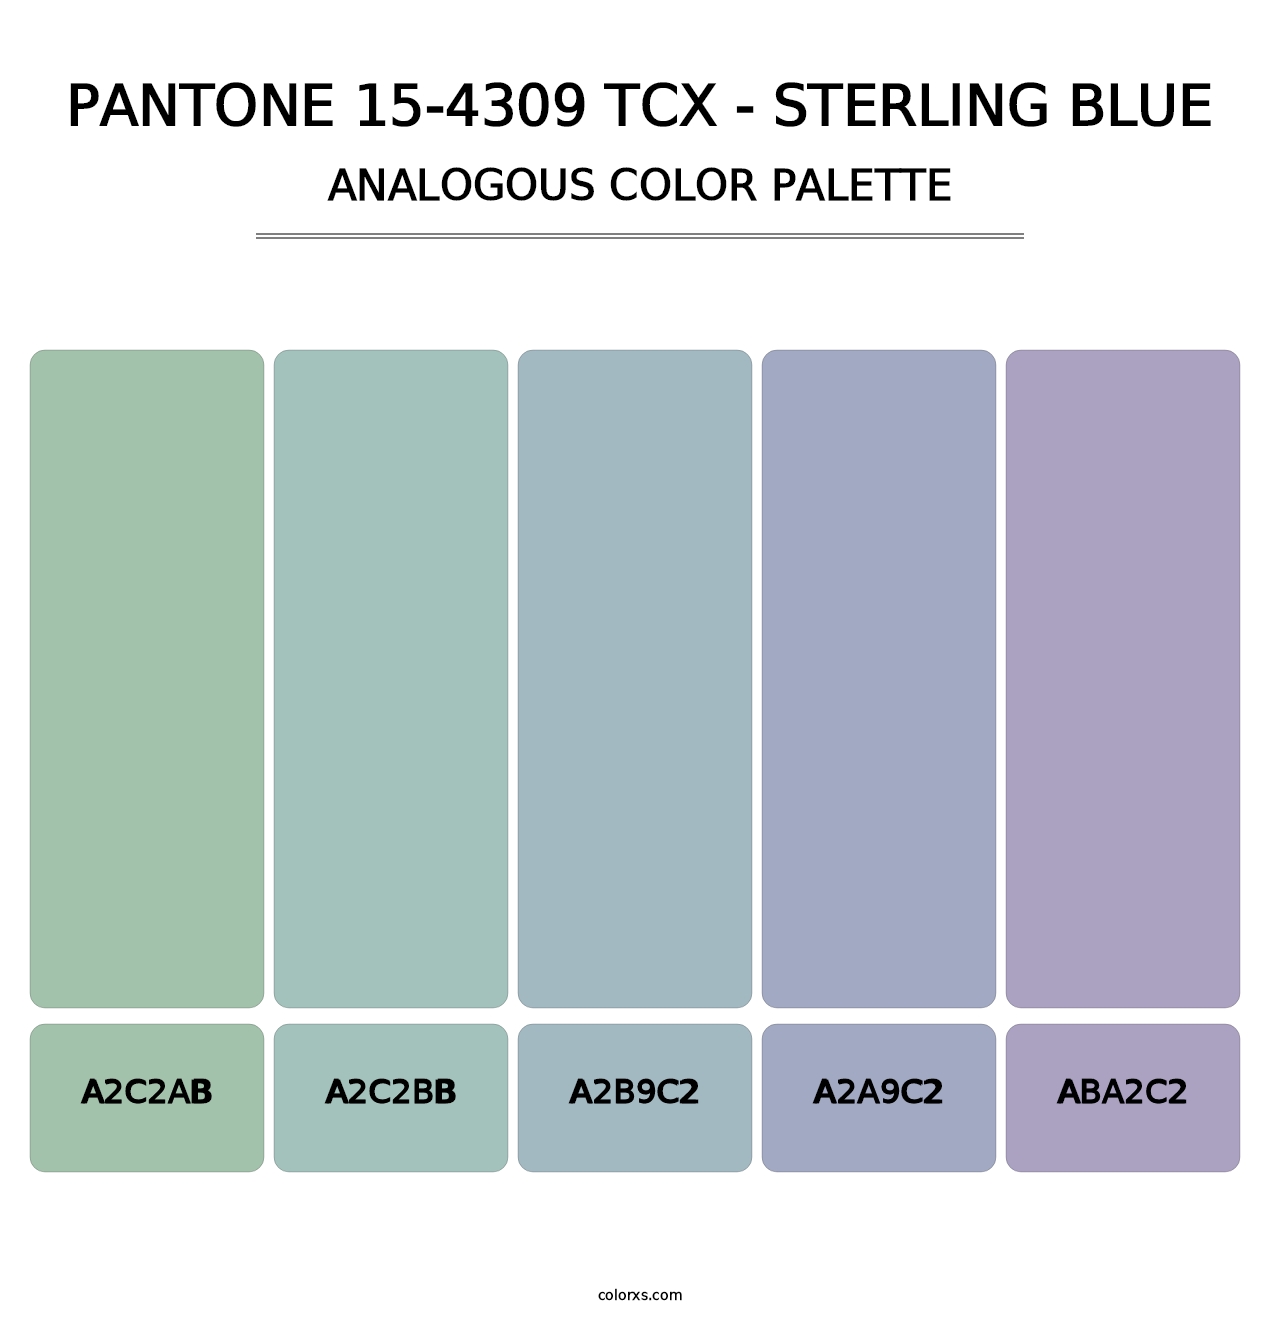 PANTONE 15-4309 TCX - Sterling Blue - Analogous Color Palette